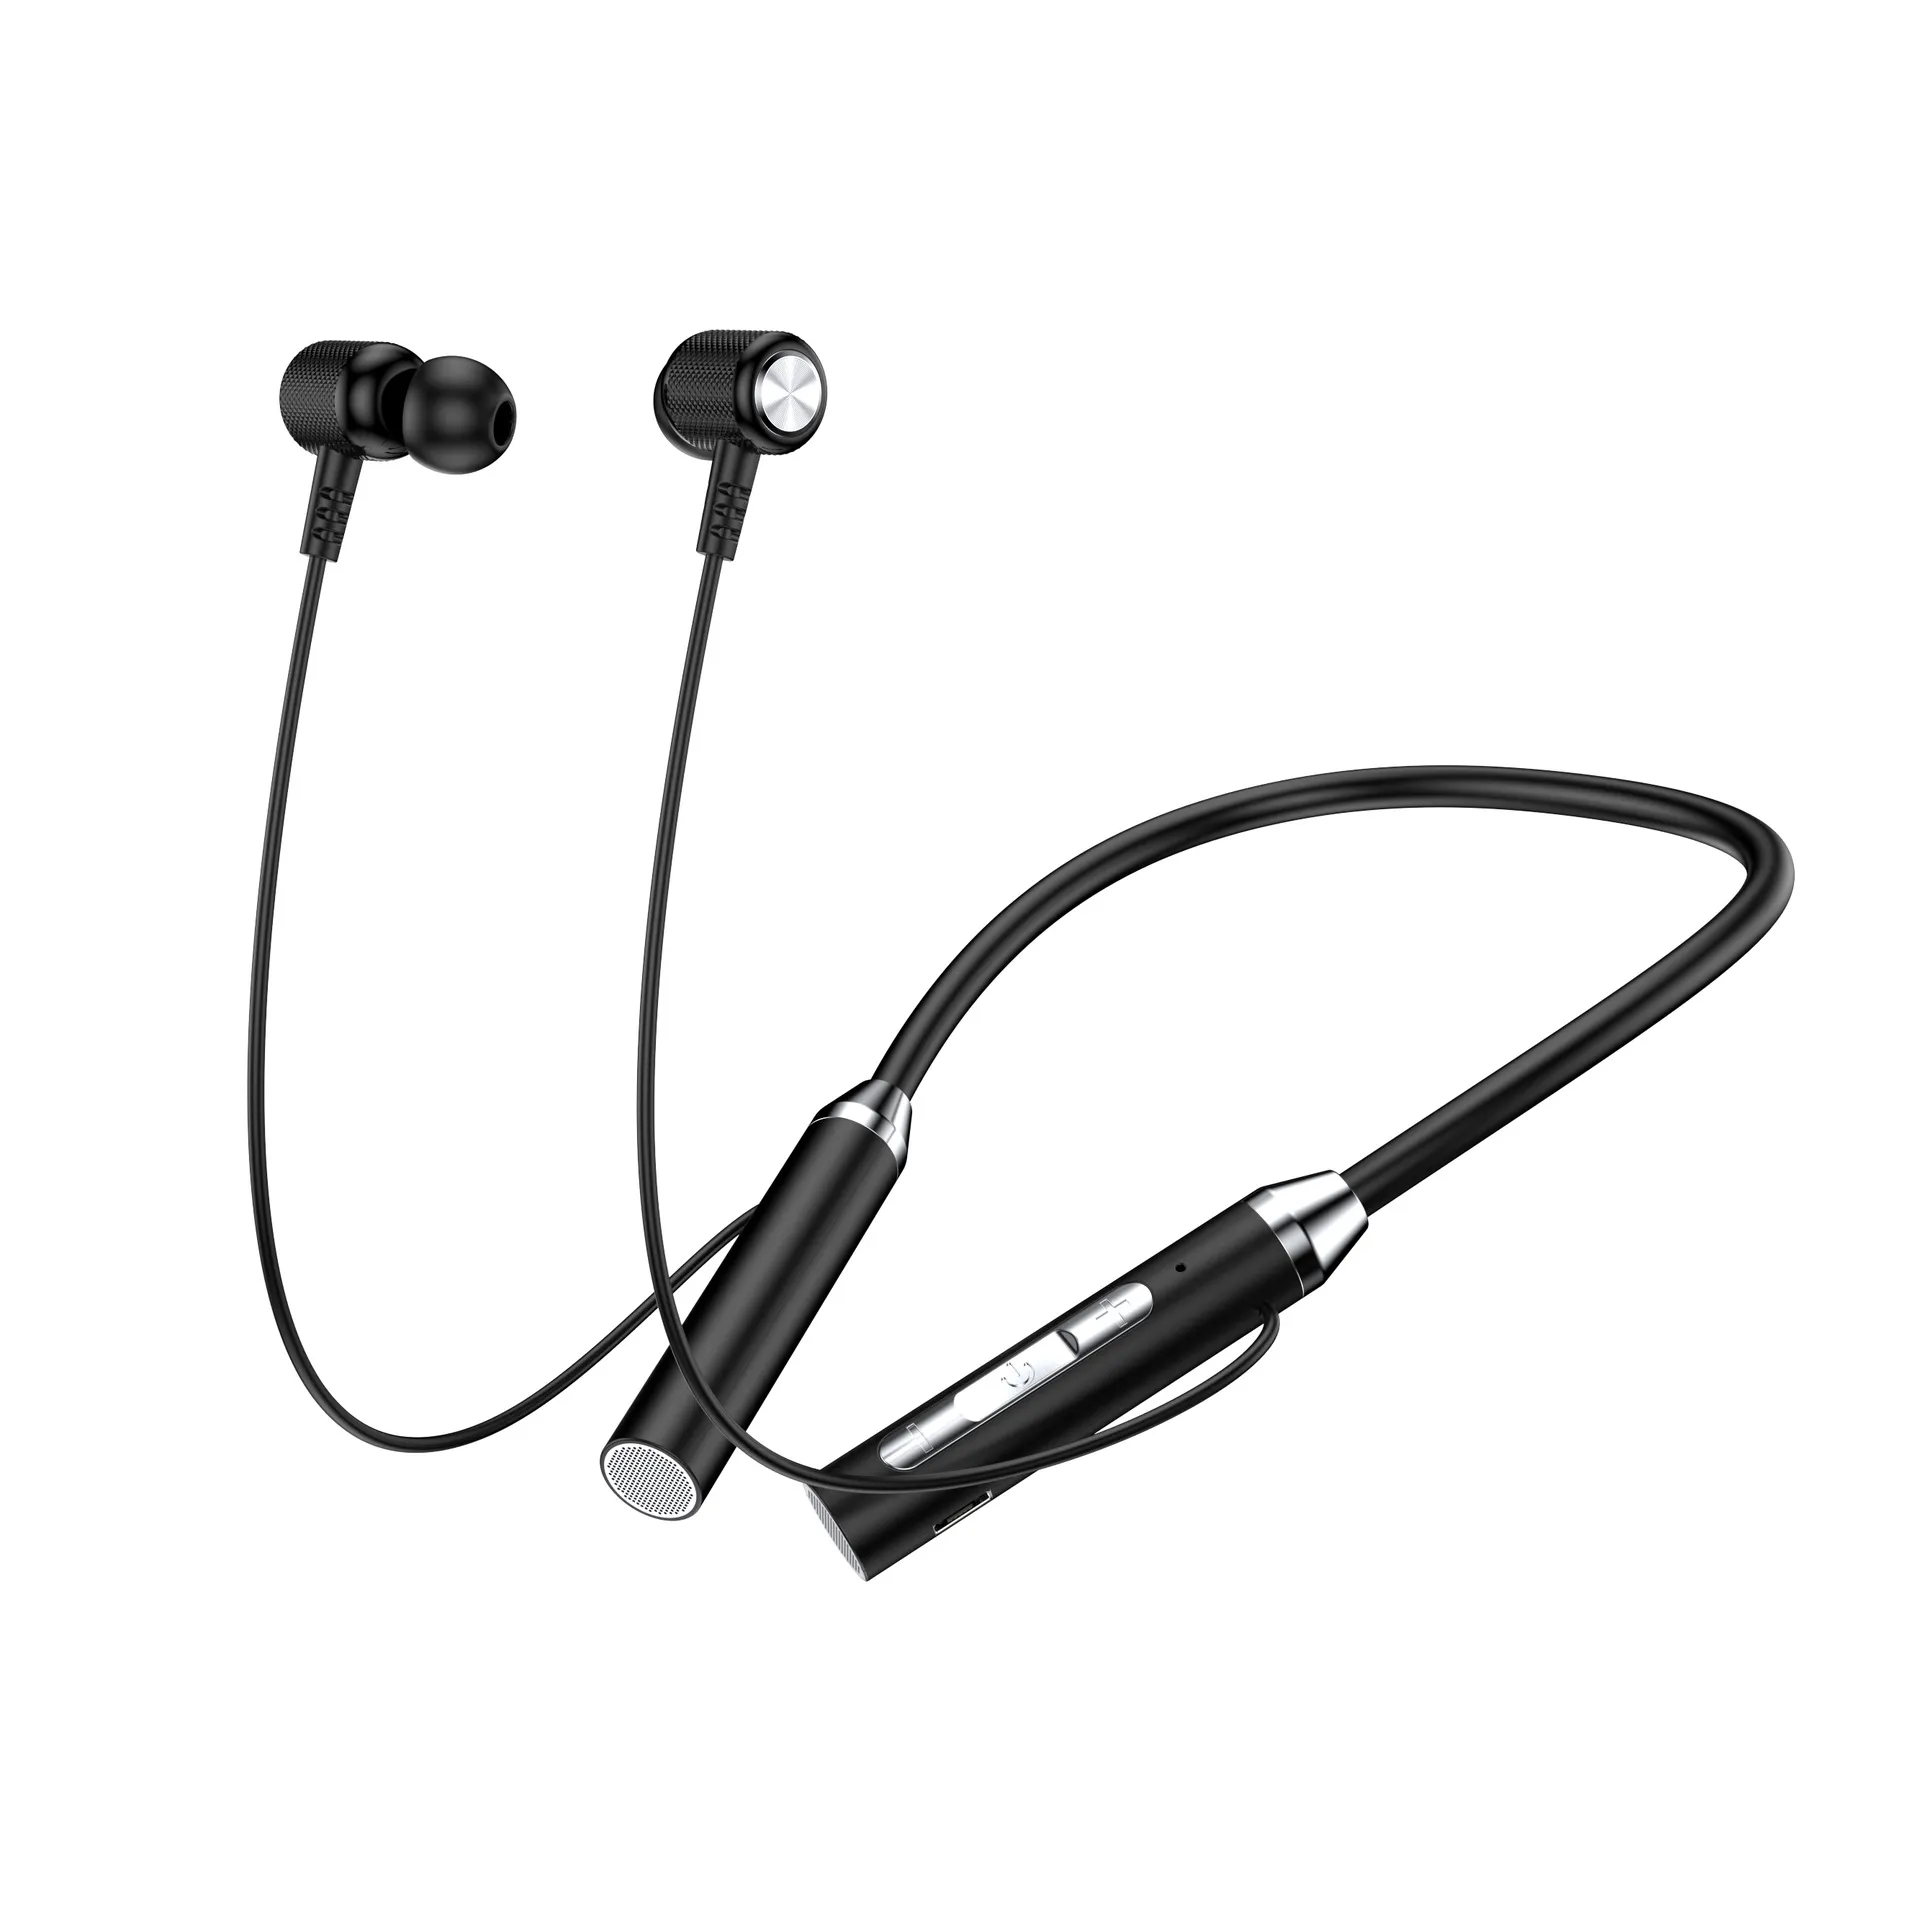 Nowe szyi wiszące Bluetooth bezprzewodowe słuchawki z wiszącym szyją w stylu sportowym w ucha, super długa żywotność baterii